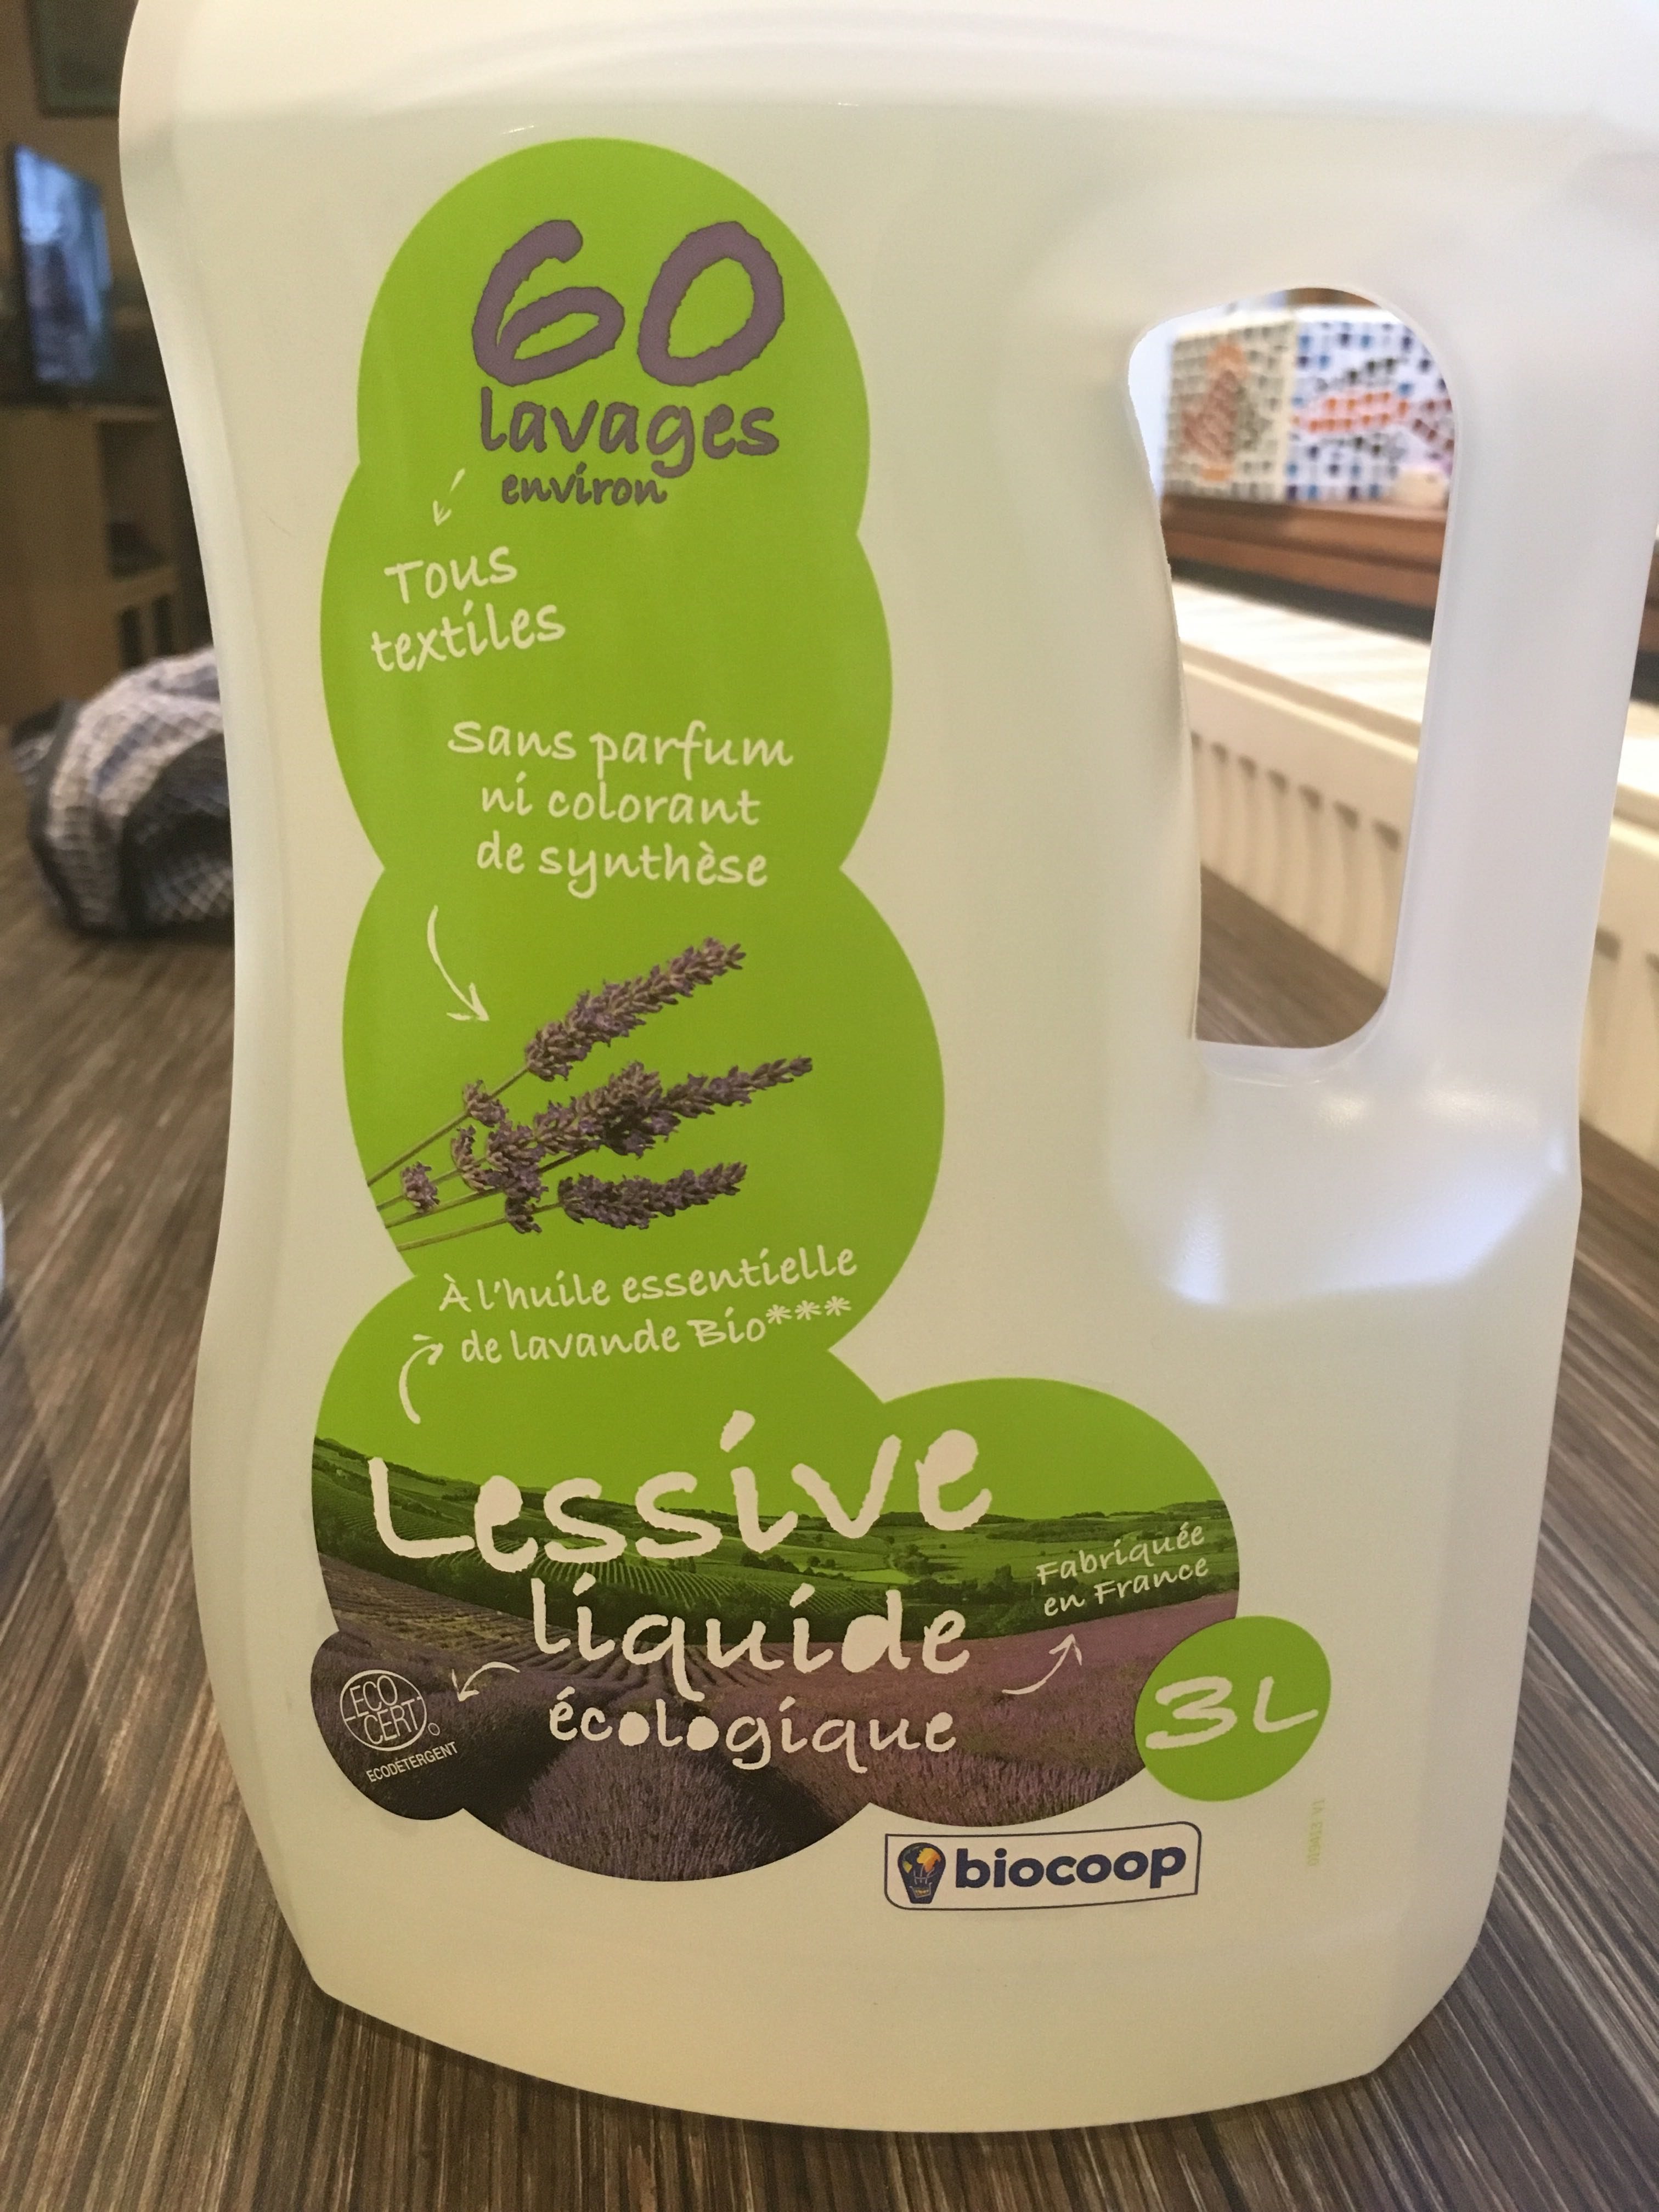 Lessive liquide écologique - Product - fr